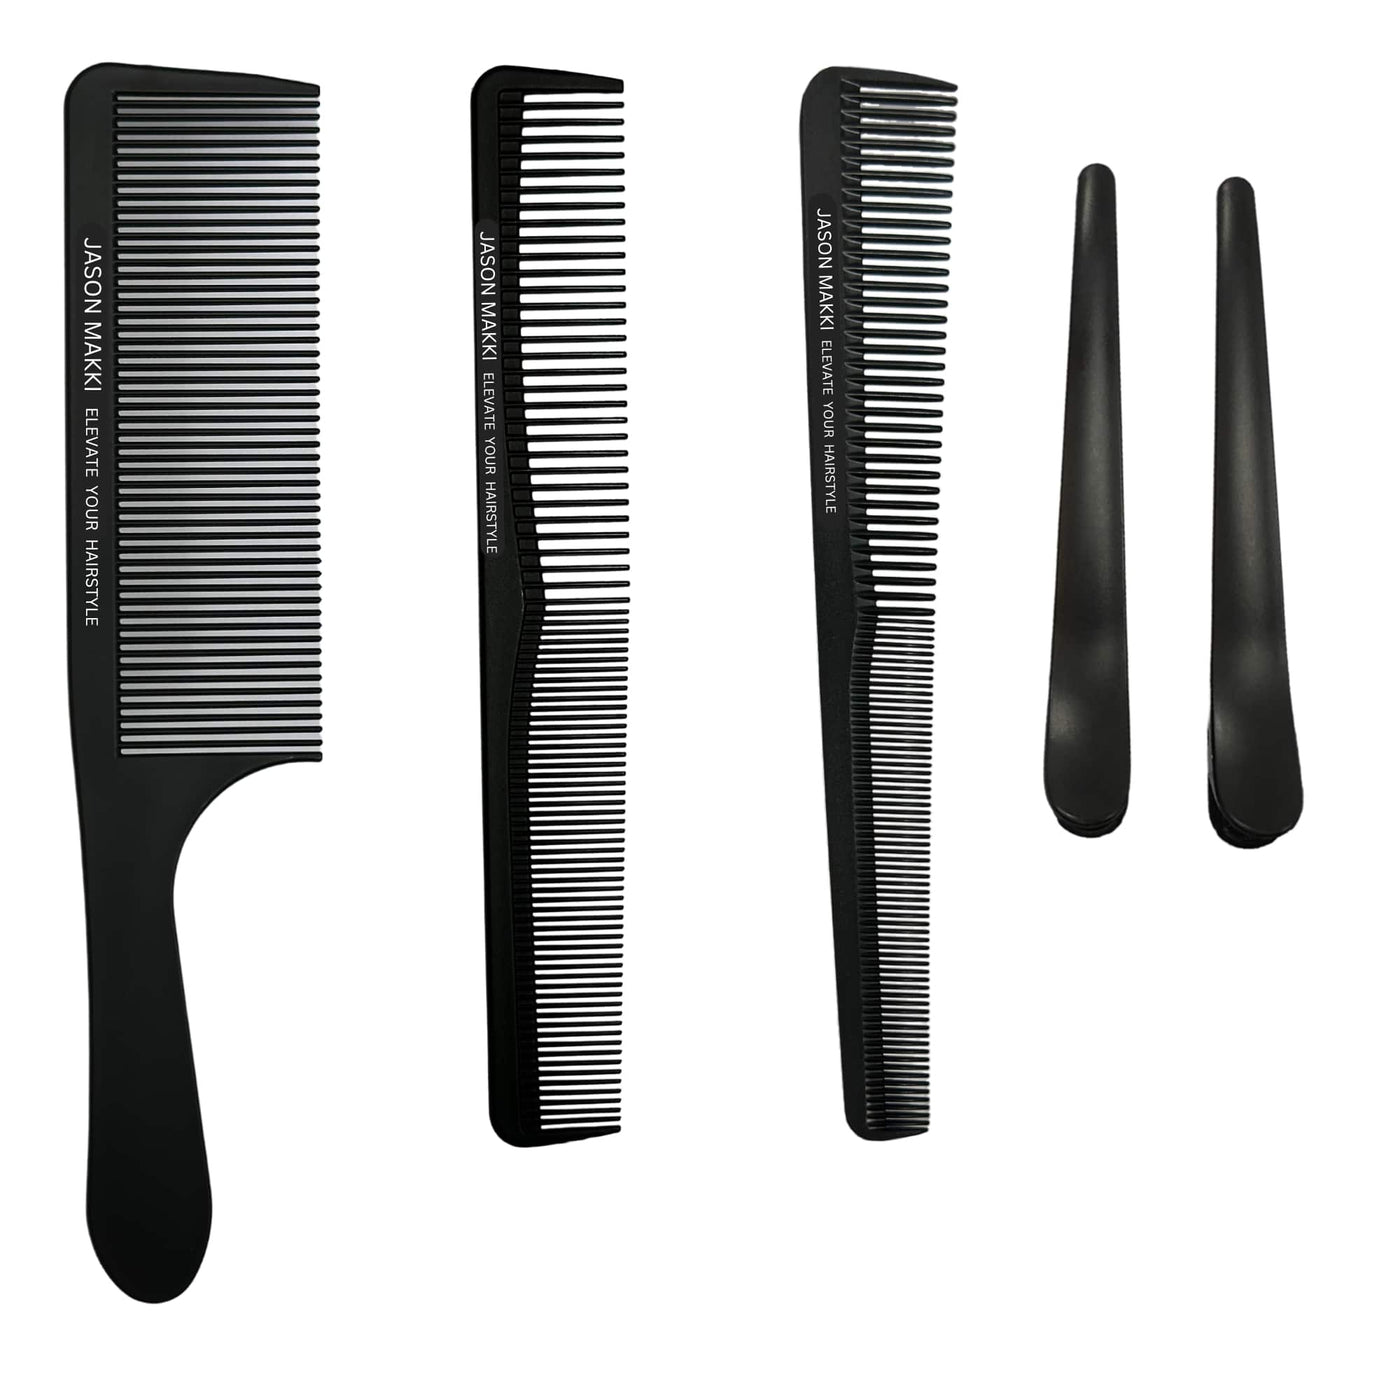 5 Pieces Barber Cutting Comb Set - 230℃ Heat Resistant Carbon Comb